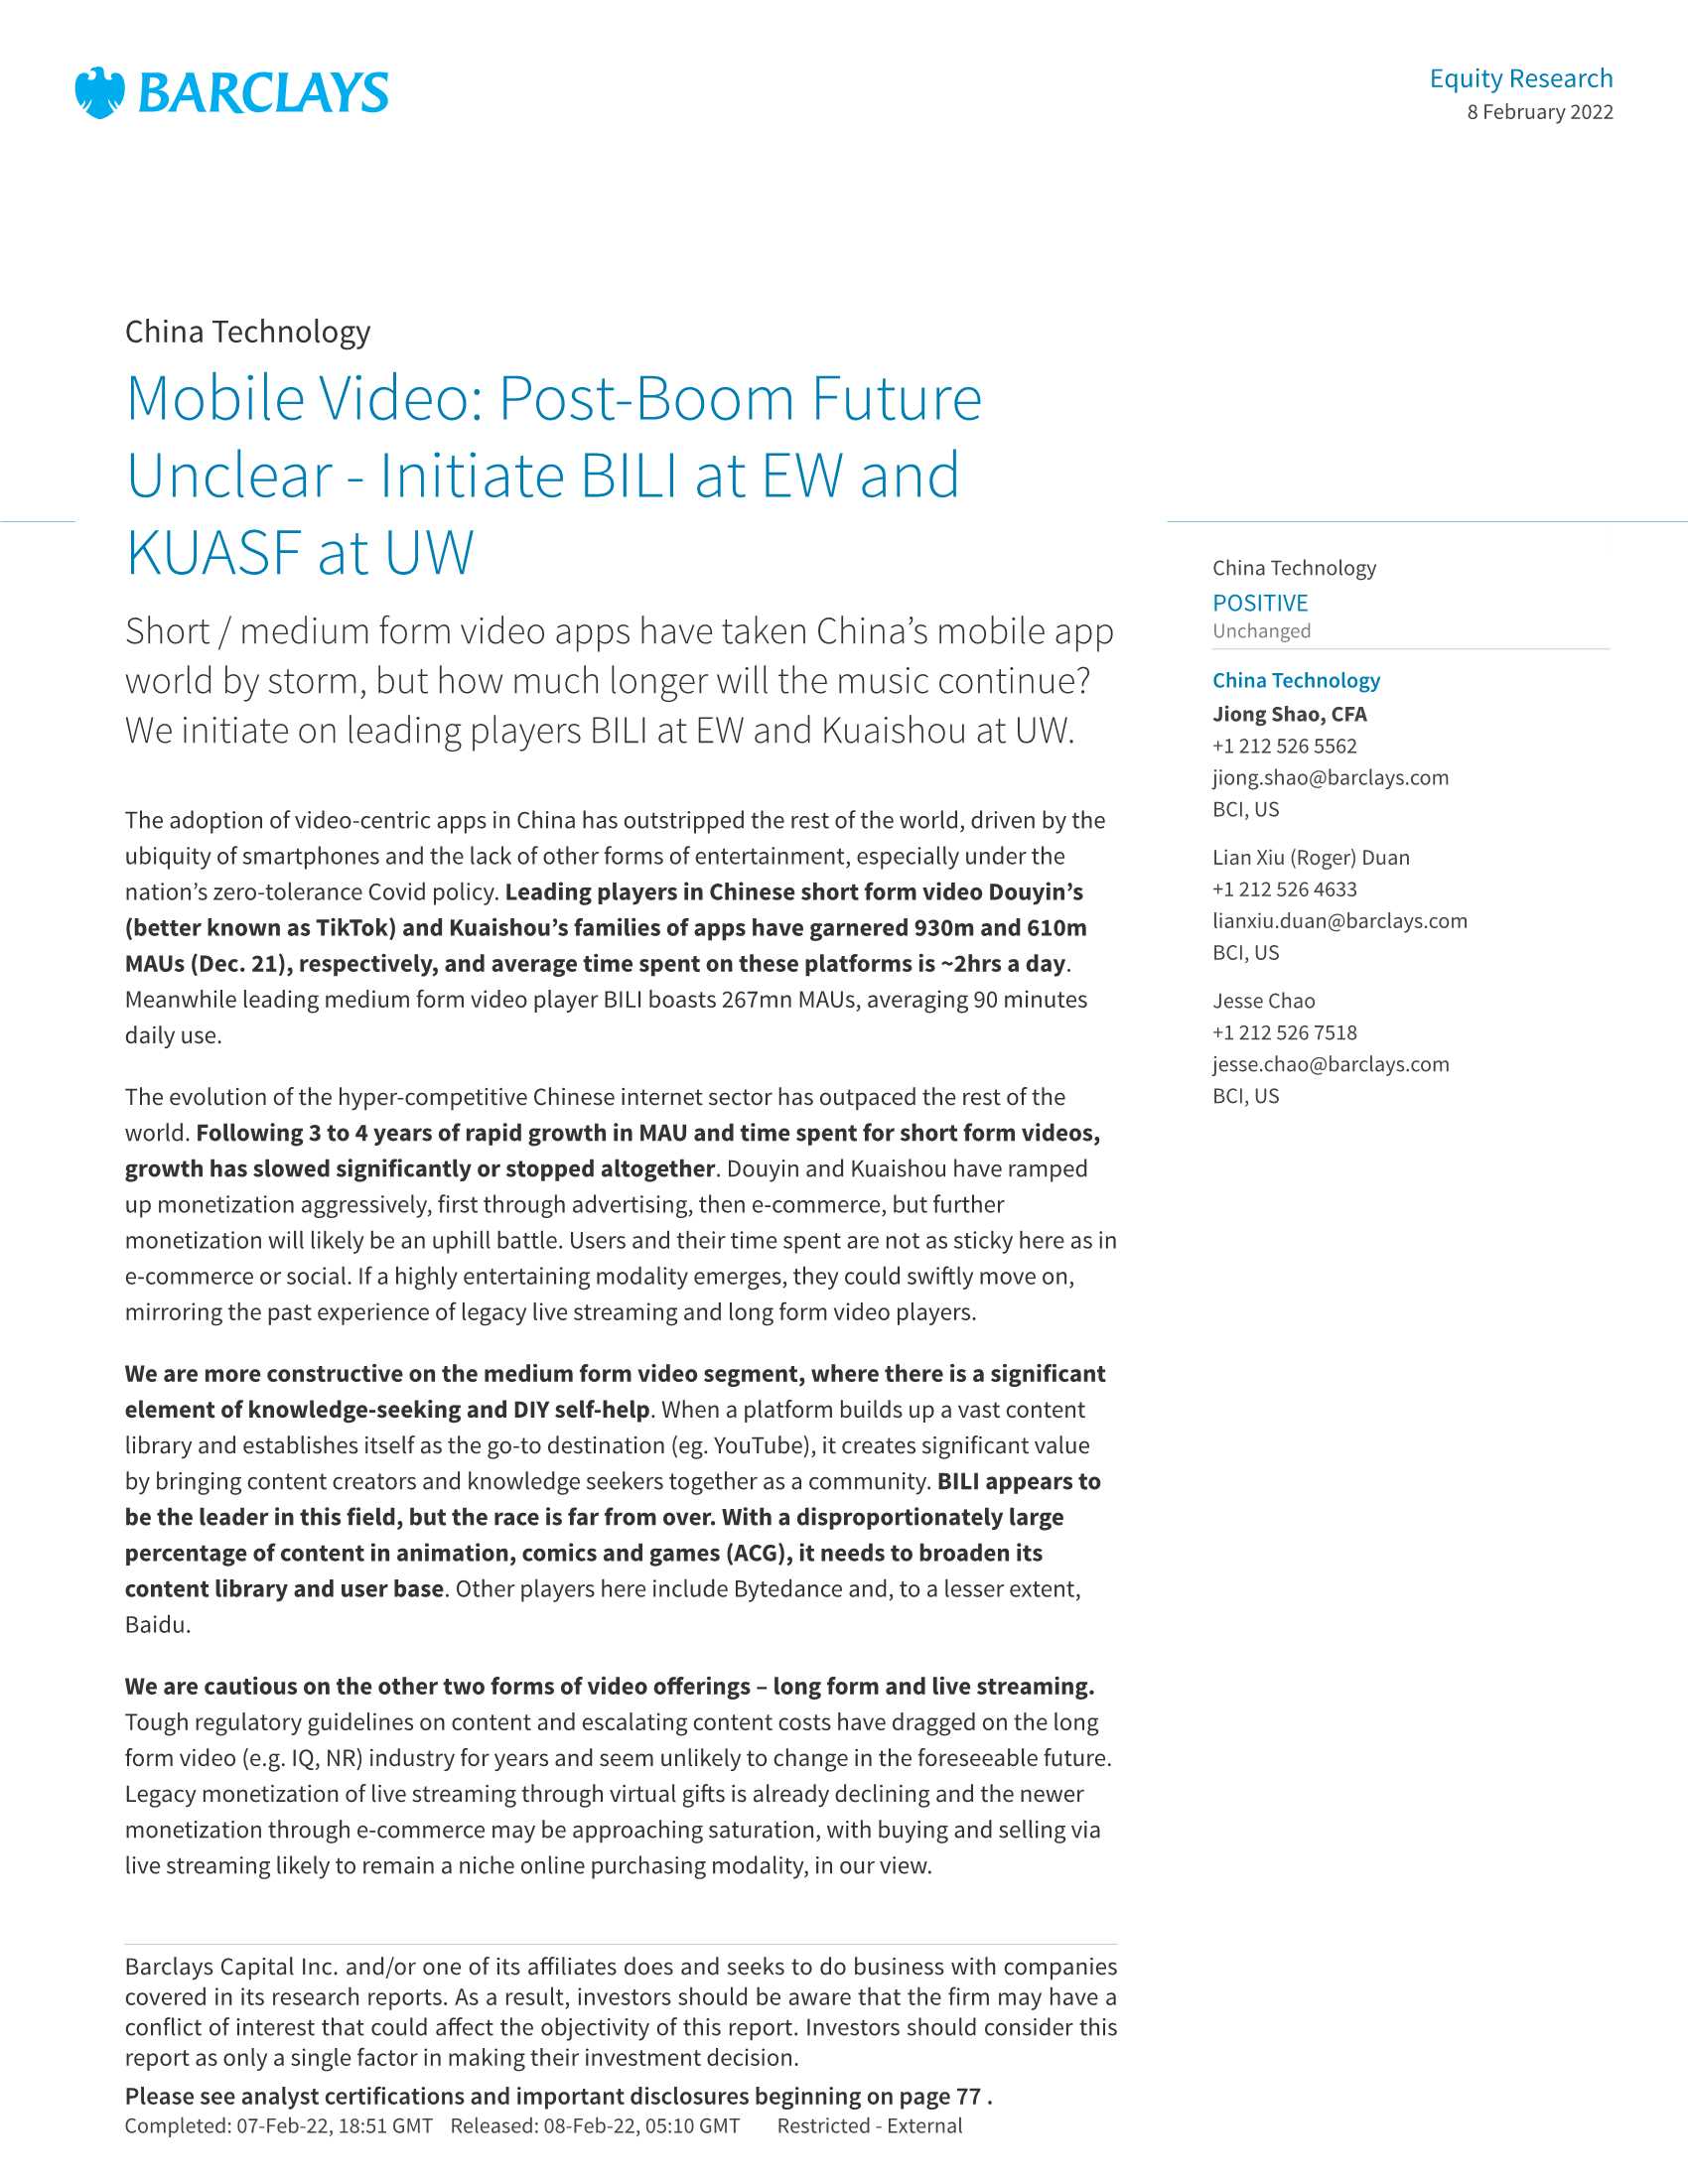 巴克莱-中国视频行业报告：繁荣后的未来尚不明朗（英）-2022.02-88页